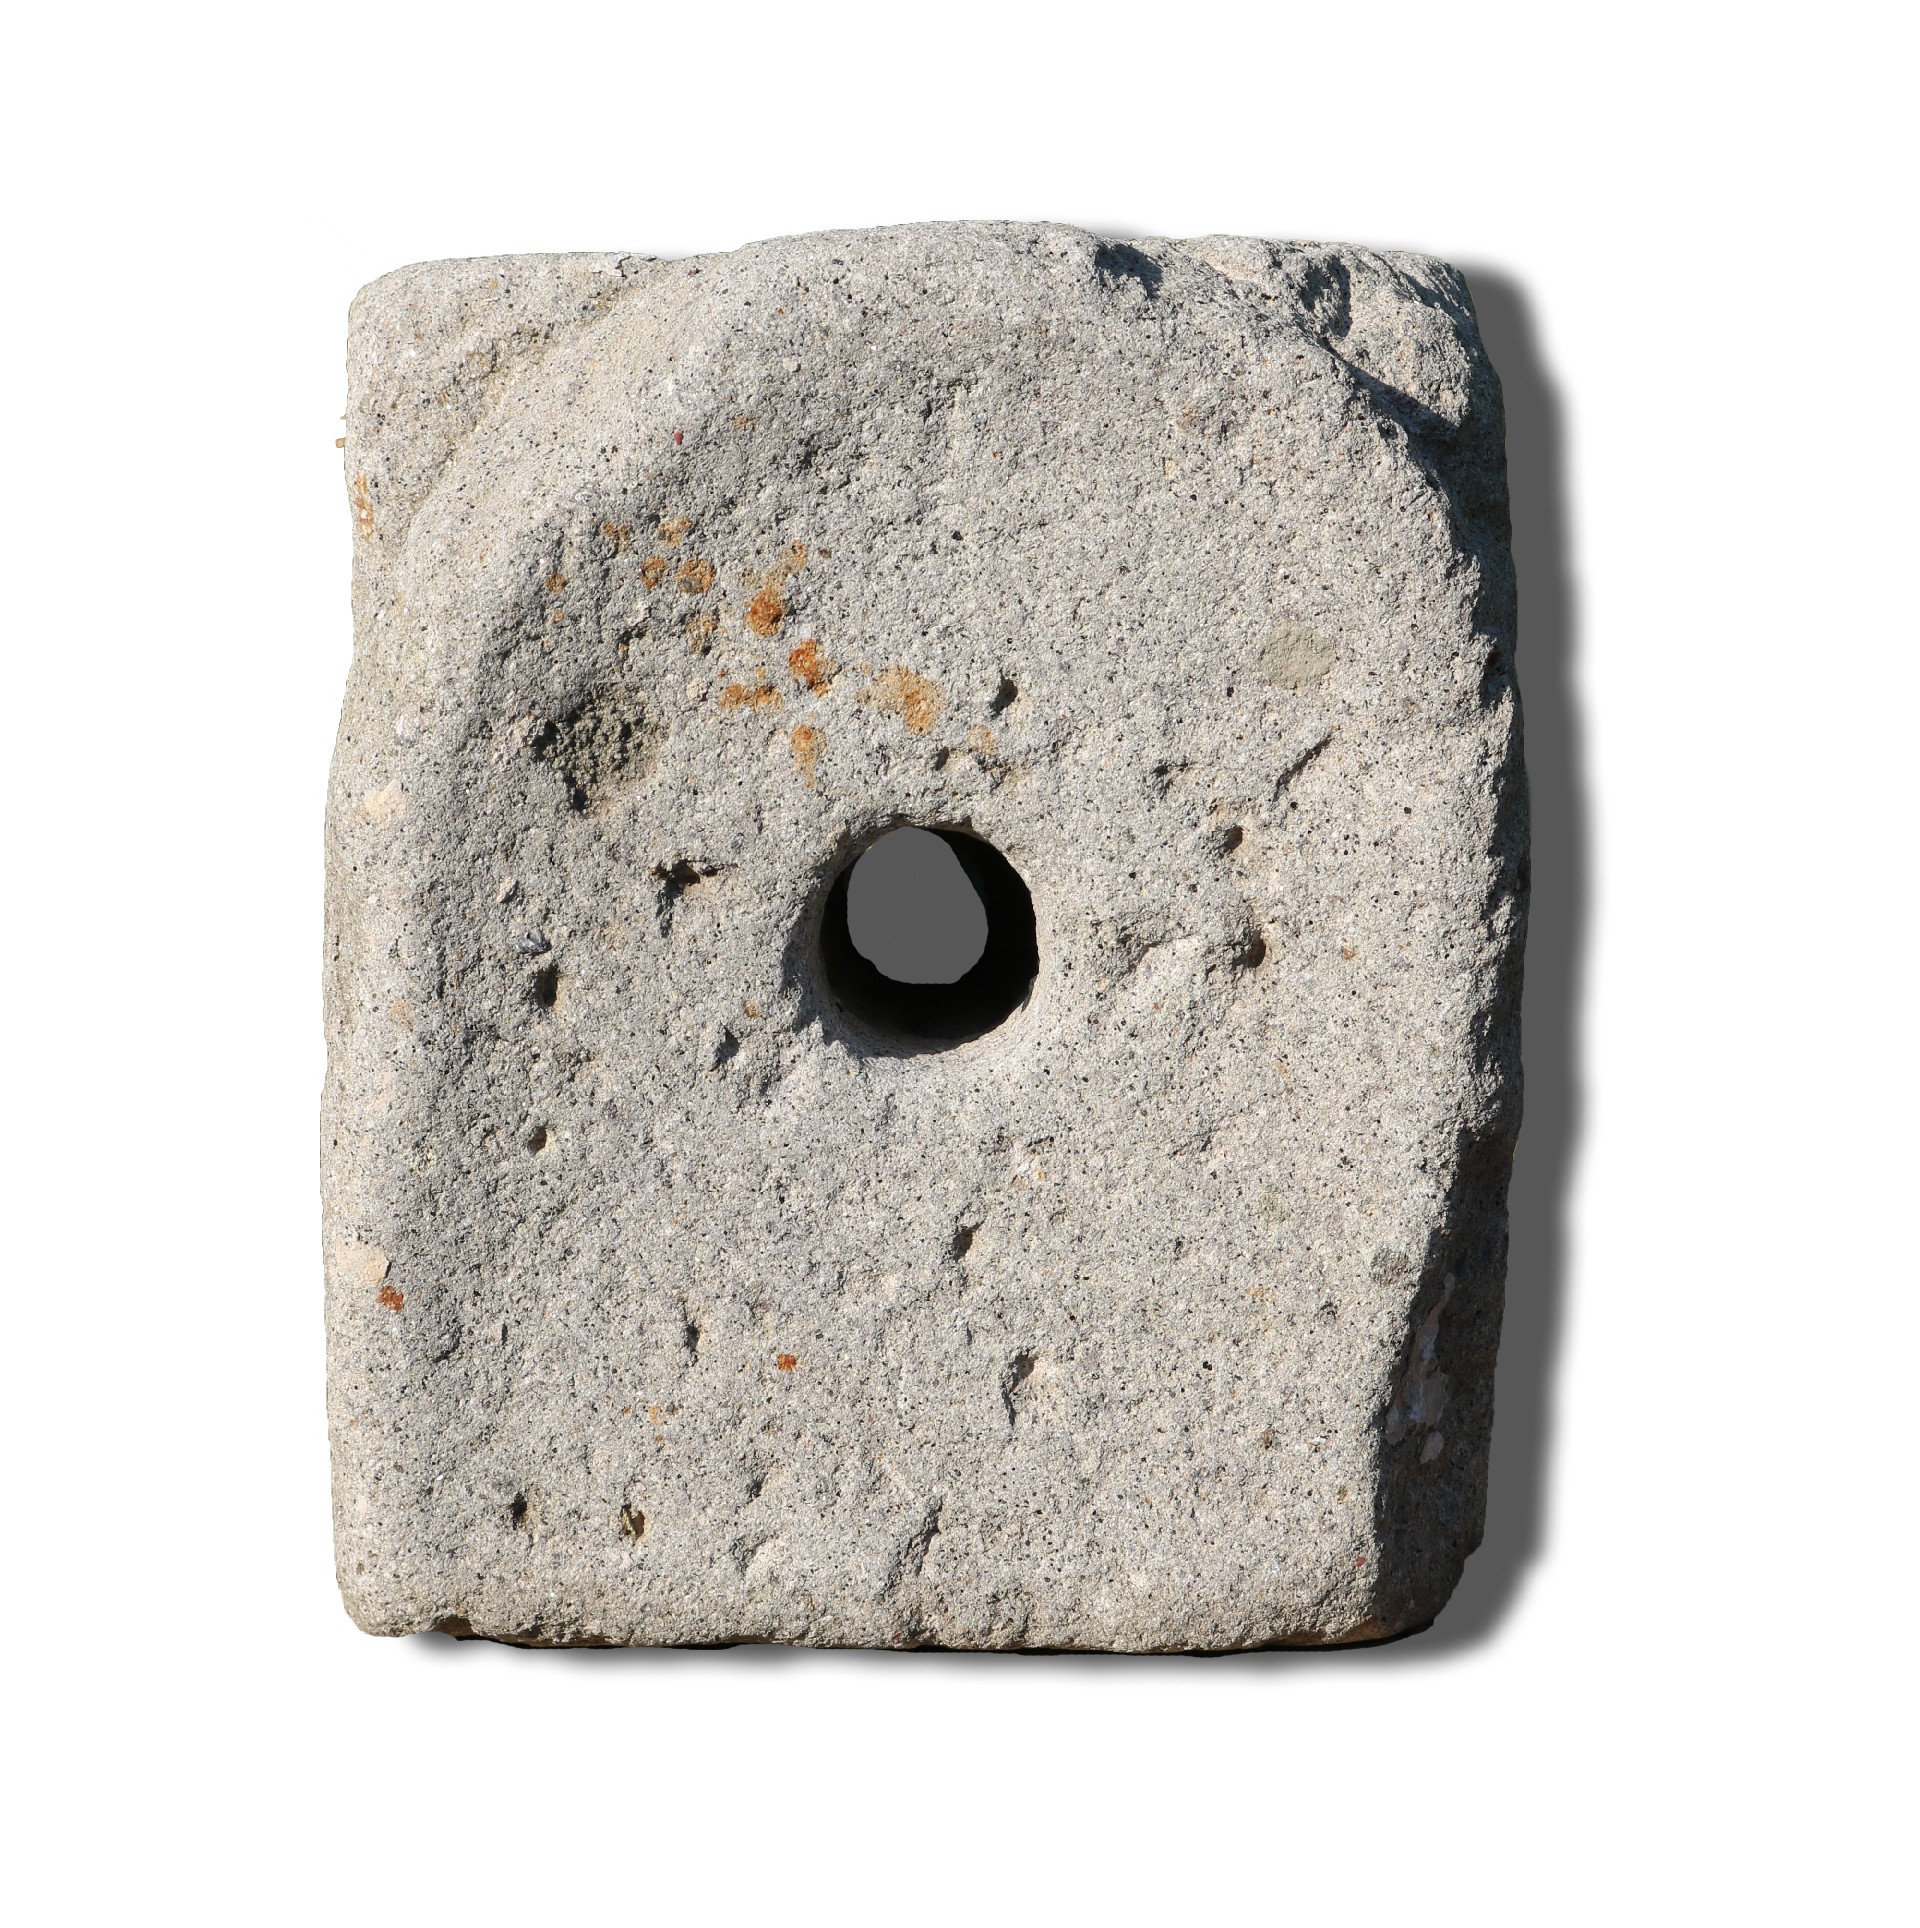 Antico pannello buttacqua in pietra. Epoca 1800. - Mascheroni Antichi - Arredo Giardino - Prodotti - Antichità Fiorillo